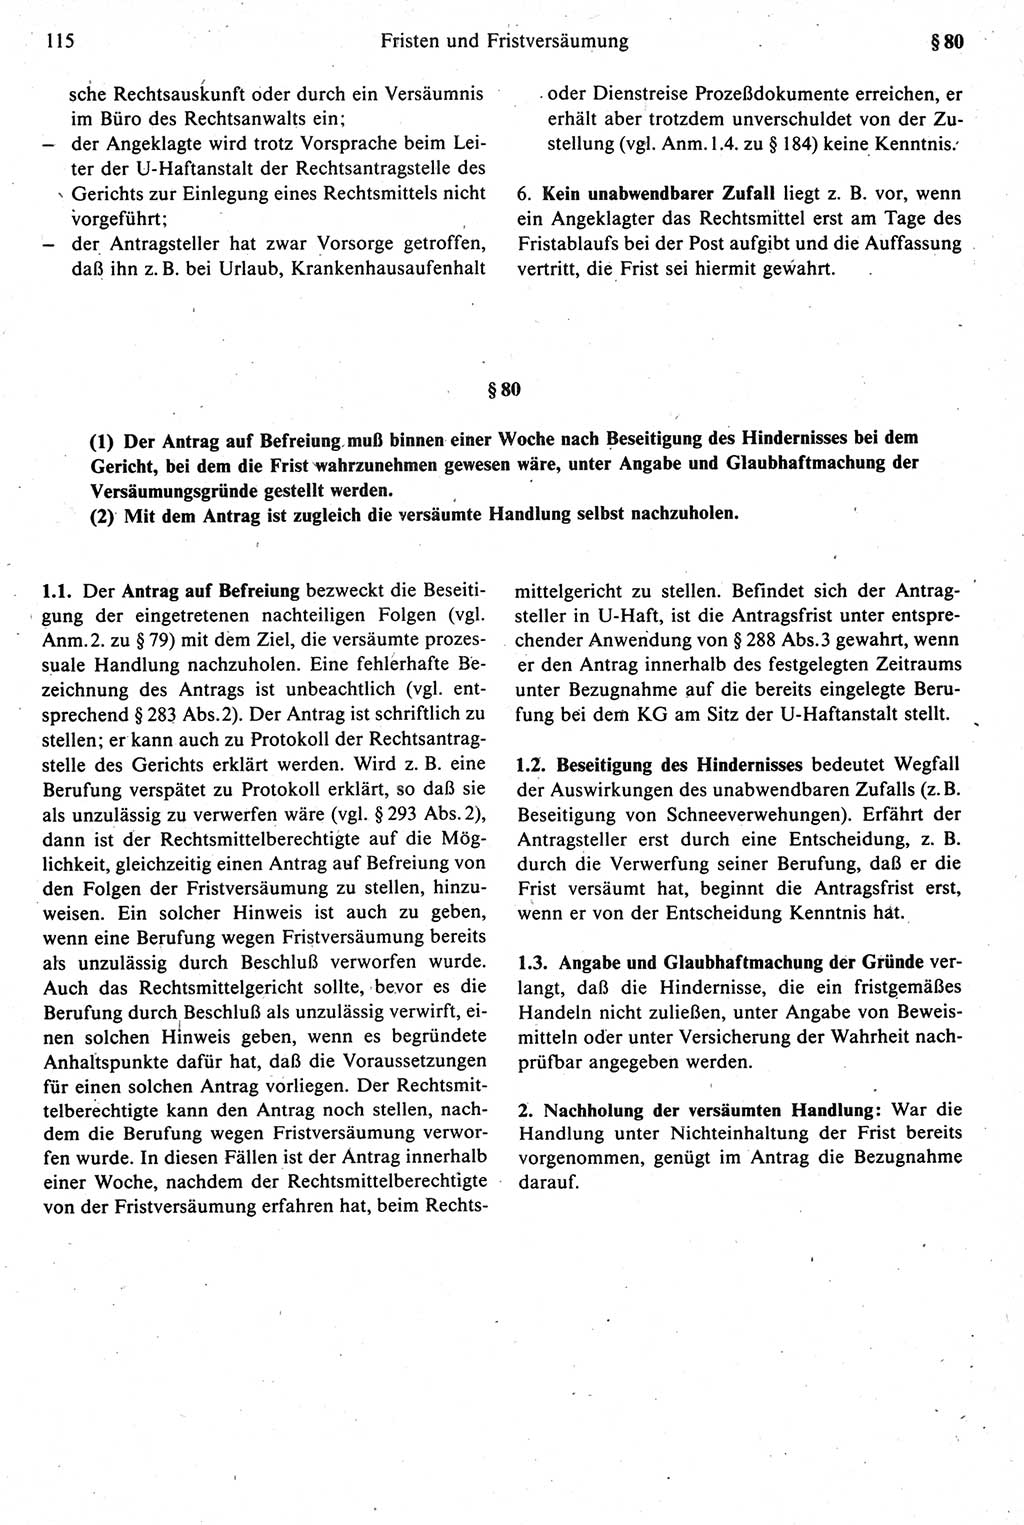 Strafprozeßrecht der DDR [Deutsche Demokratische Republik], Kommentar zur Strafprozeßordnung (StPO) 1987, Seite 115 (Strafprozeßr. DDR Komm. StPO 1987, S. 115)